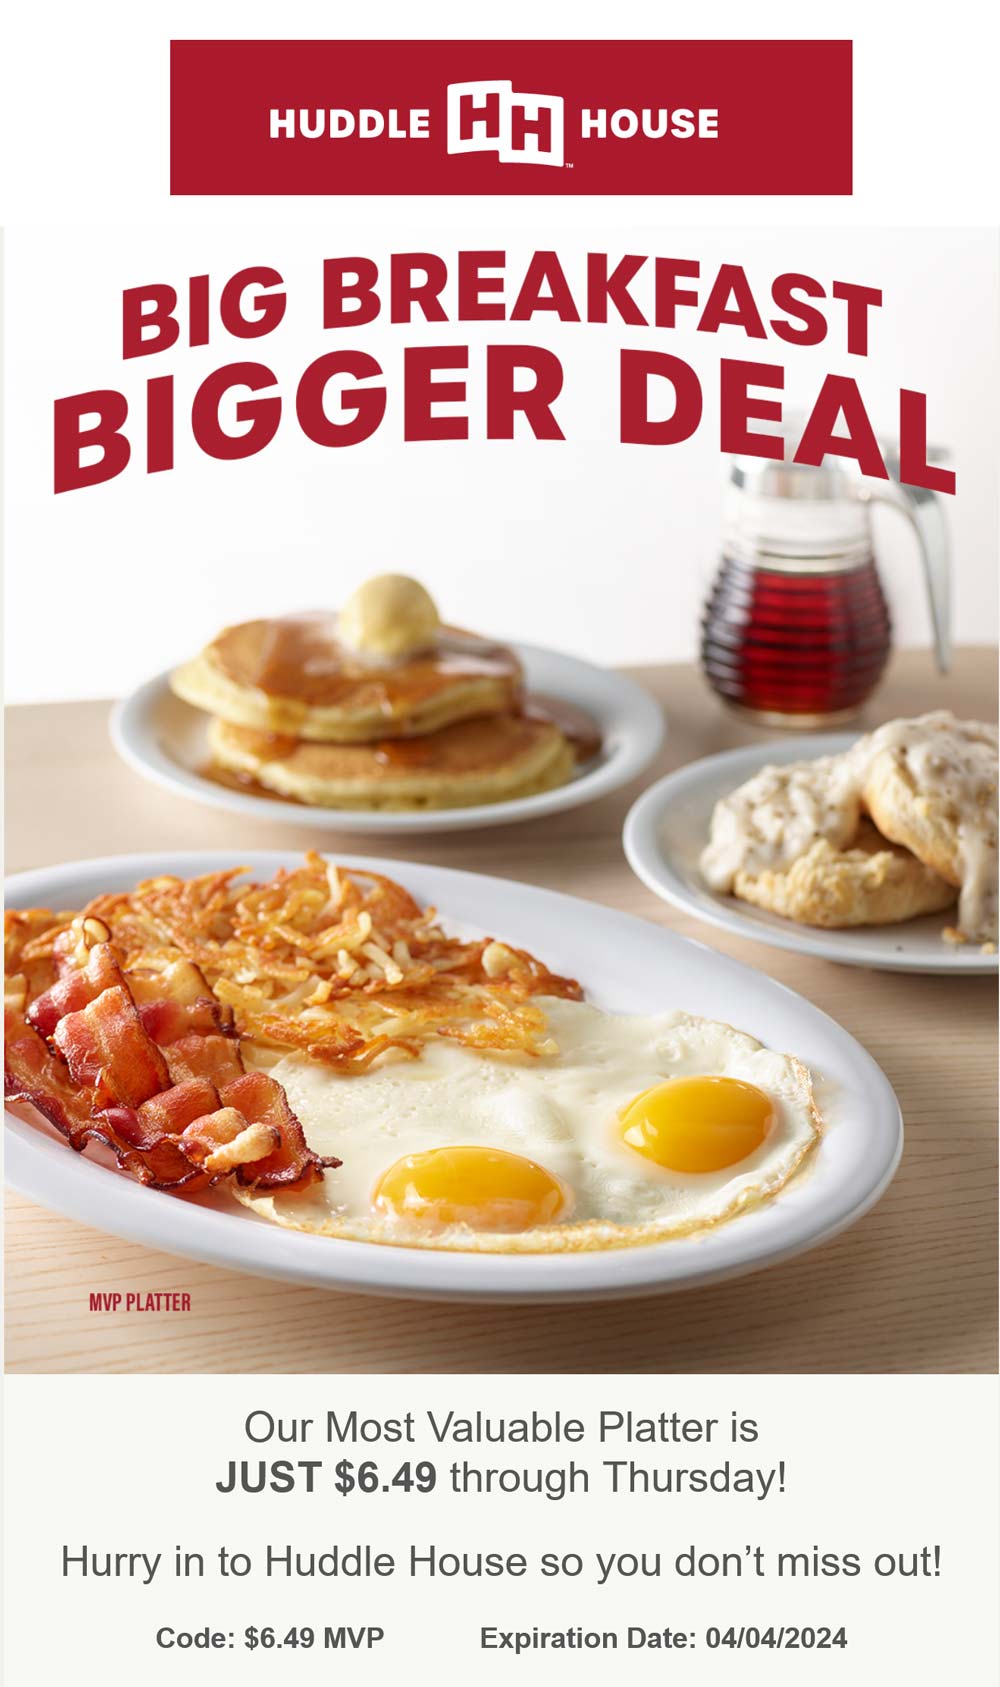 Huddle House restaurants Coupon  MVP breakfast platter for $6.49 at Huddle House #huddlehouse 